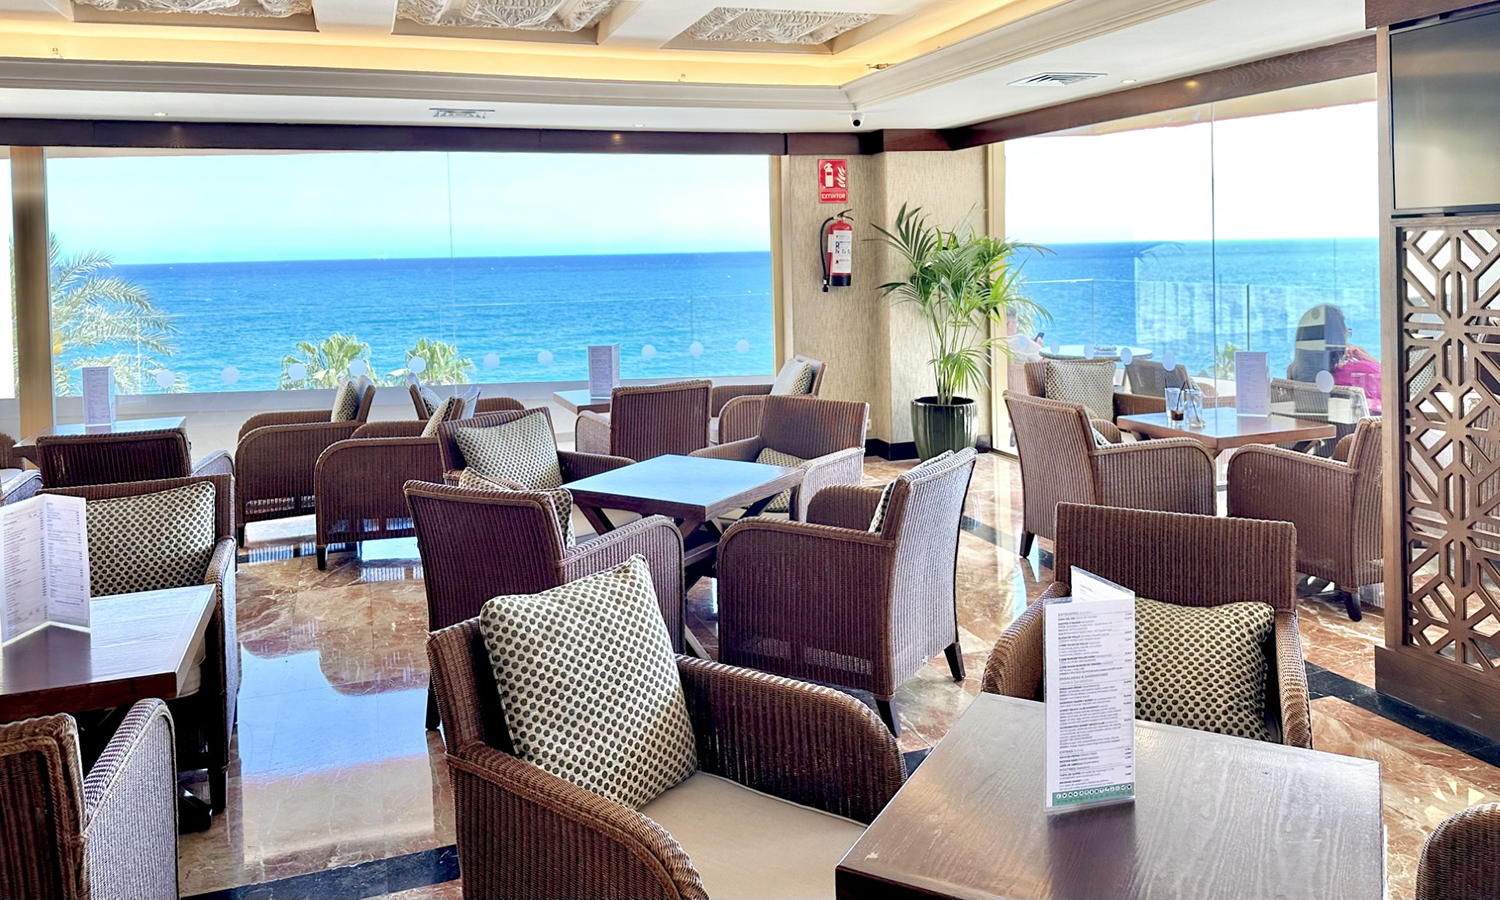 Bar Panorama con vistas sobre el Mar Mediterráneo en Benalmádena-Costa